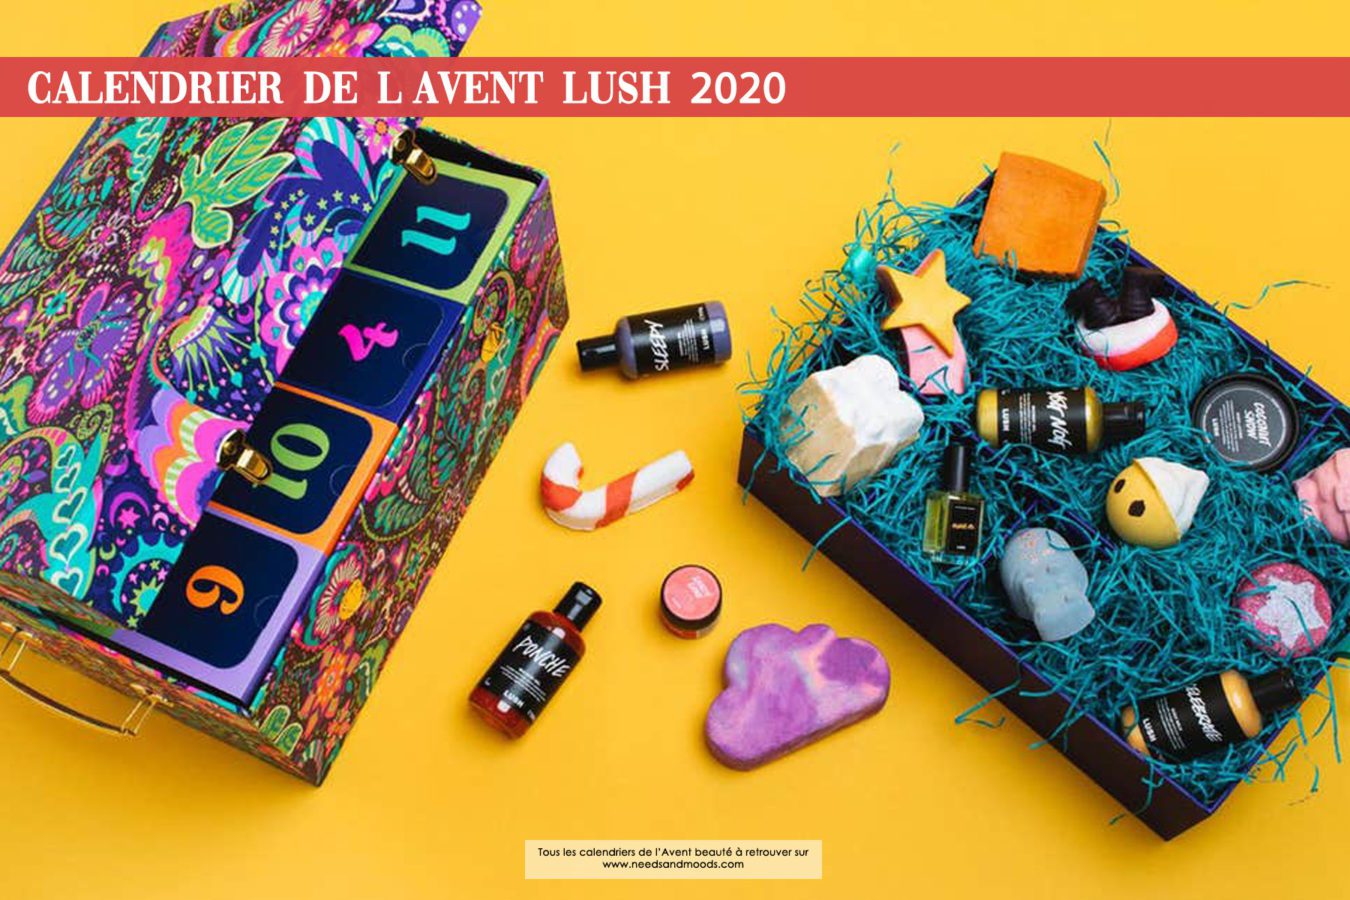 Calendrier de l'Avent Lush 2020 : avis, contenu, code promo ! (spoiler)